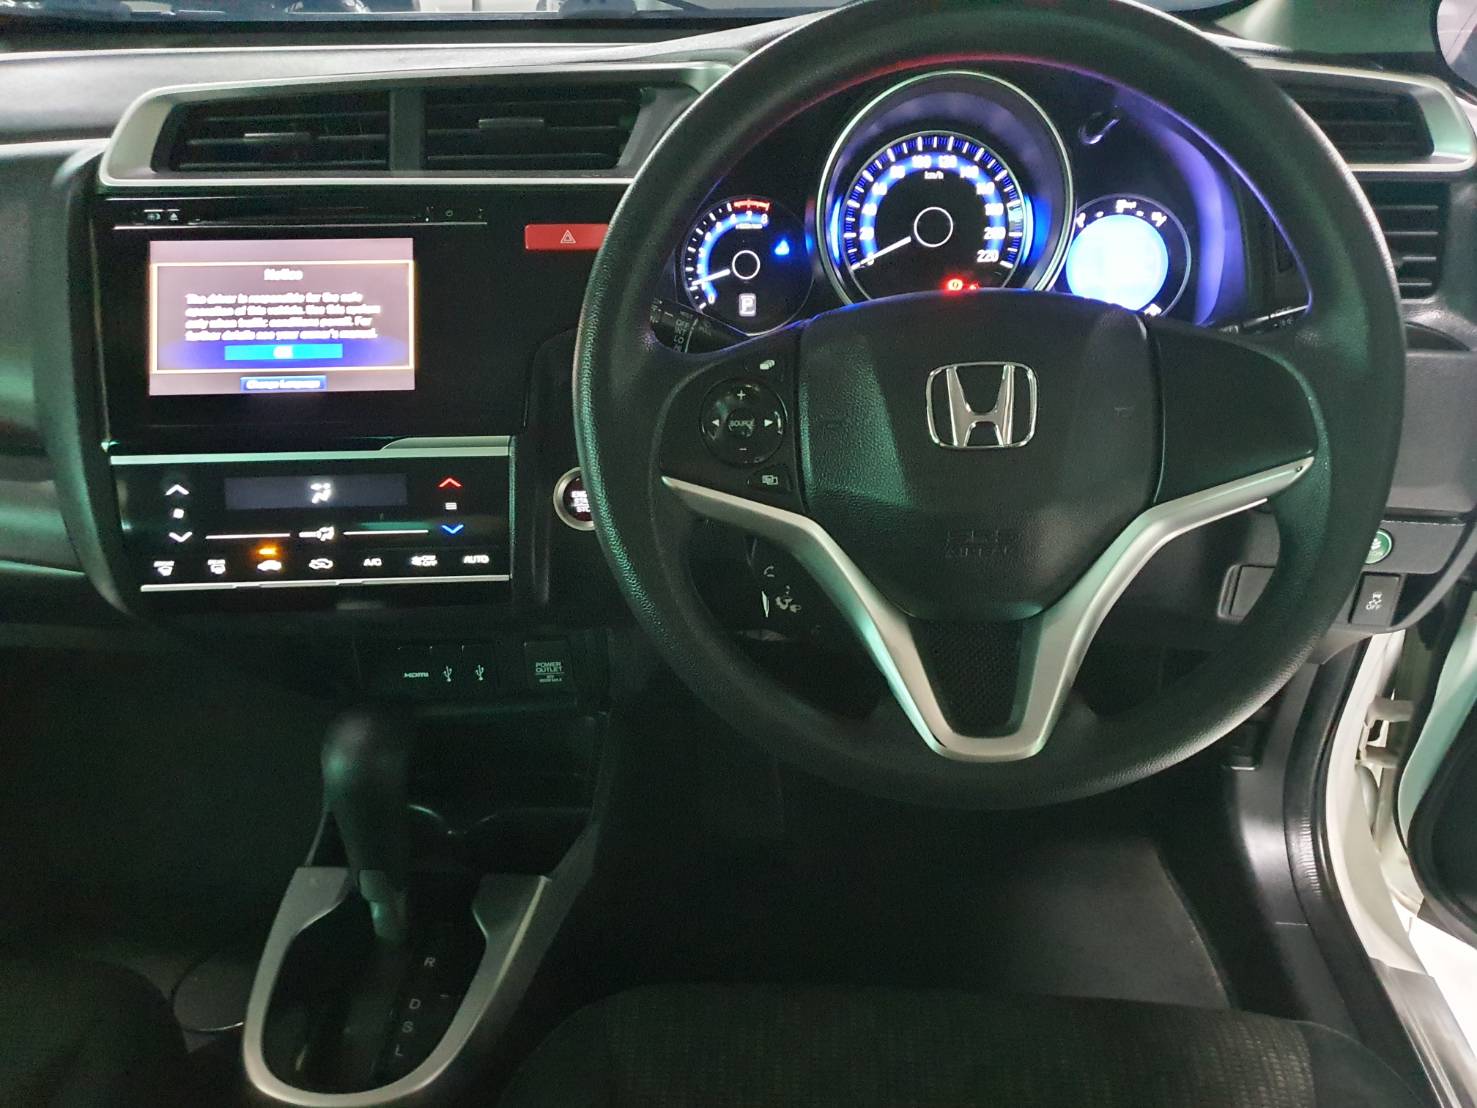 Honda Jazz 1.5V Auto ปี 2014 สีขาว มือ1 เช็คศูนย์